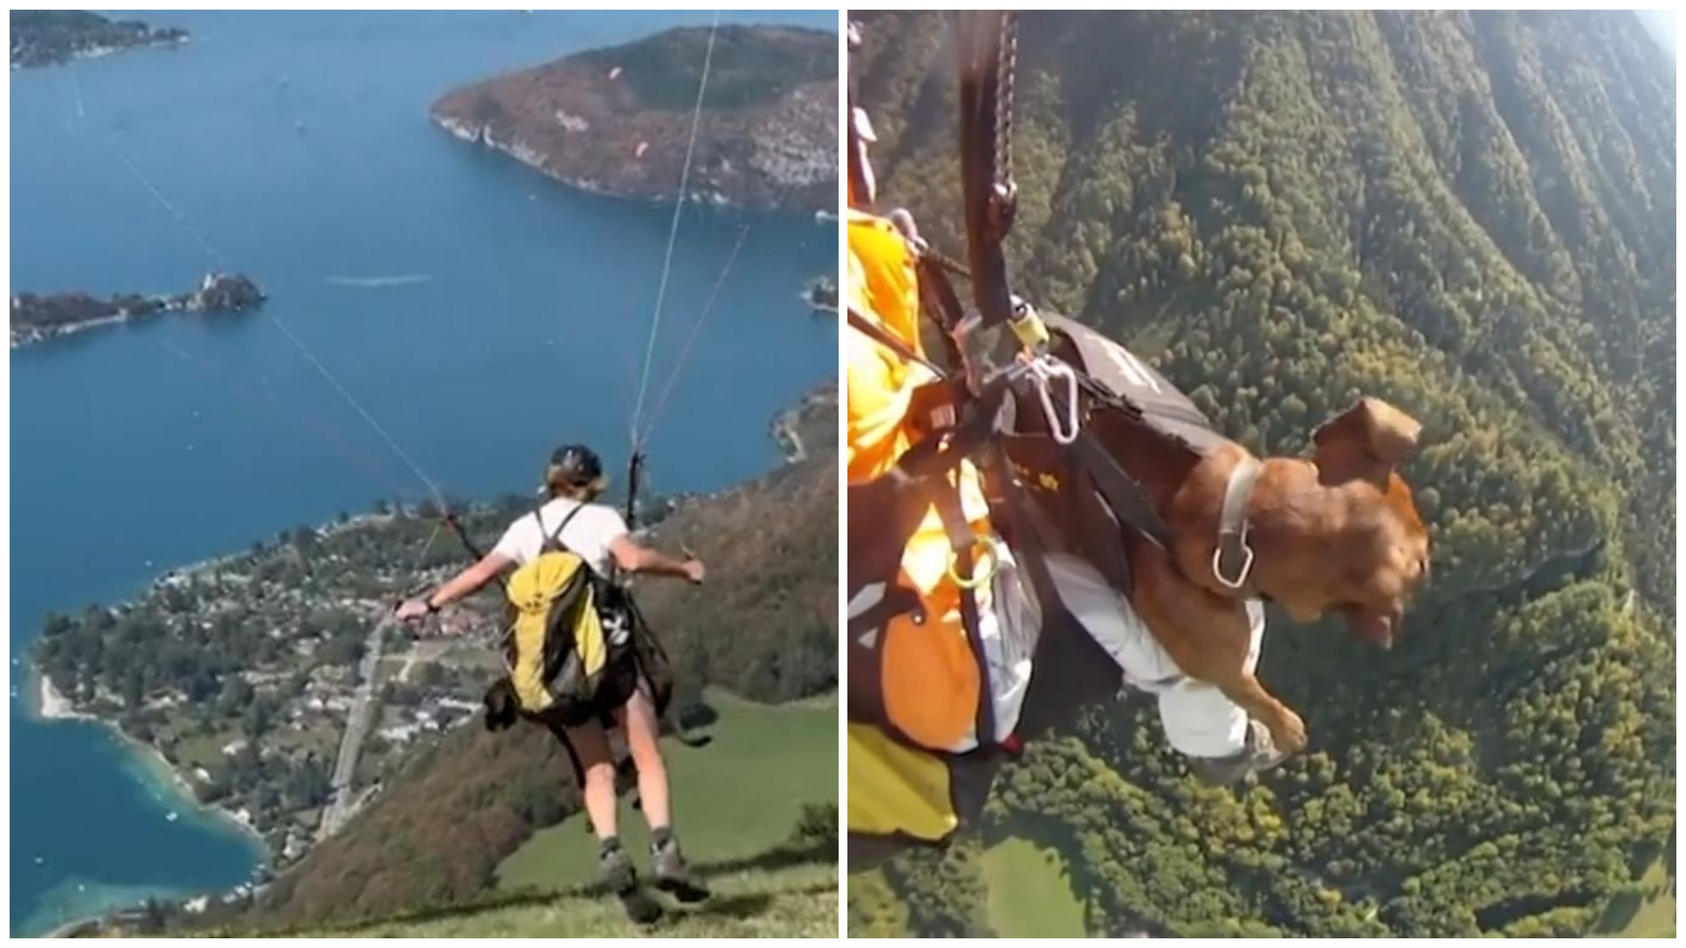 Schon über 200 Sprünge: Frau macht Paragliding mit Hündin In 2.500 Metern Höhe!